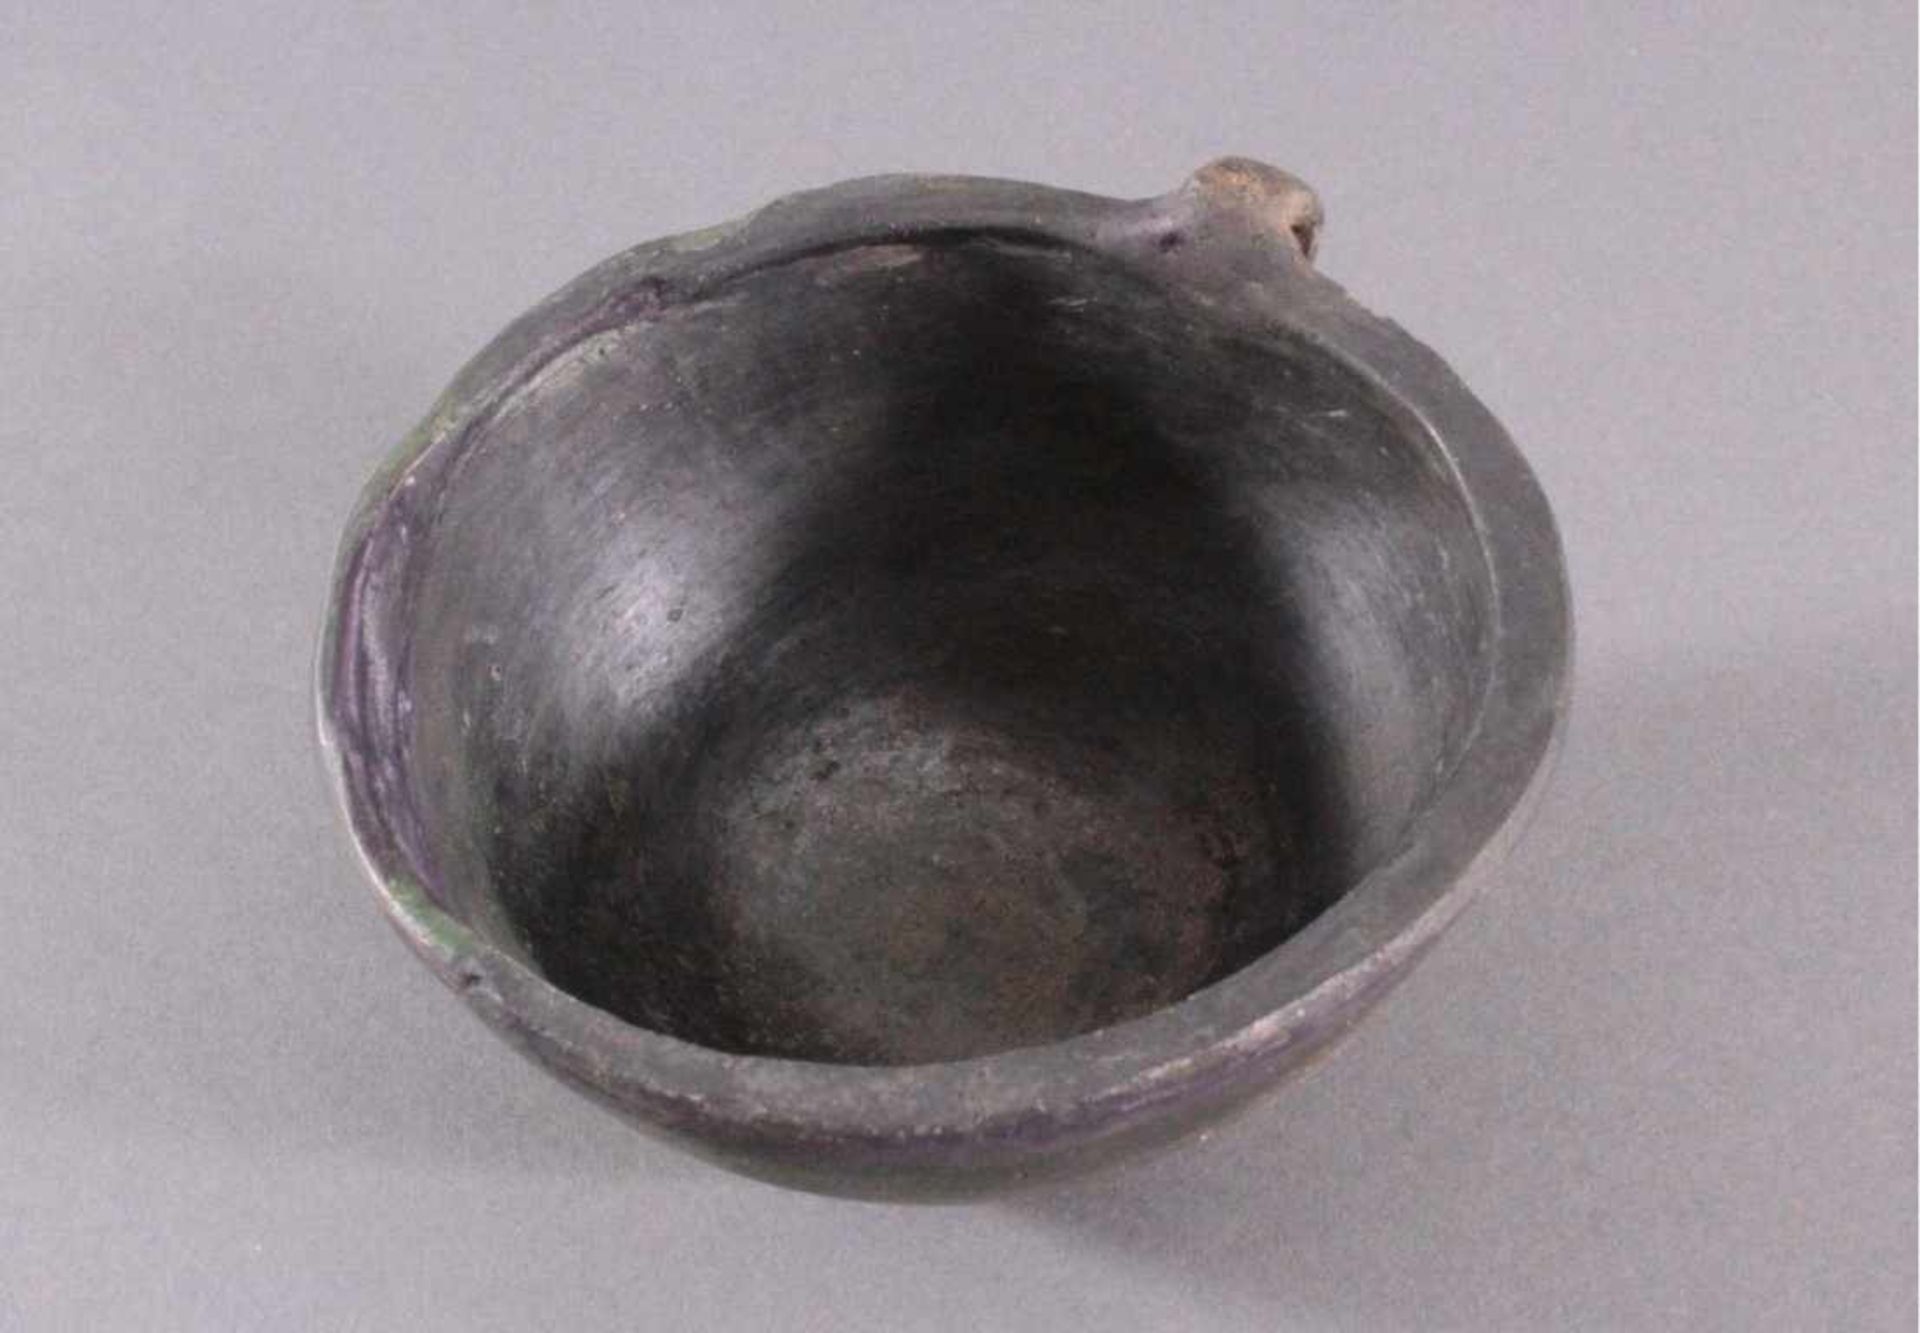 Henkelgefäß - Lausitzer Kultur 900-500 v. Chr.Tassenförmiges Einhenkelgefäß, aus dunkelbraunem Ton, - Bild 4 aus 5